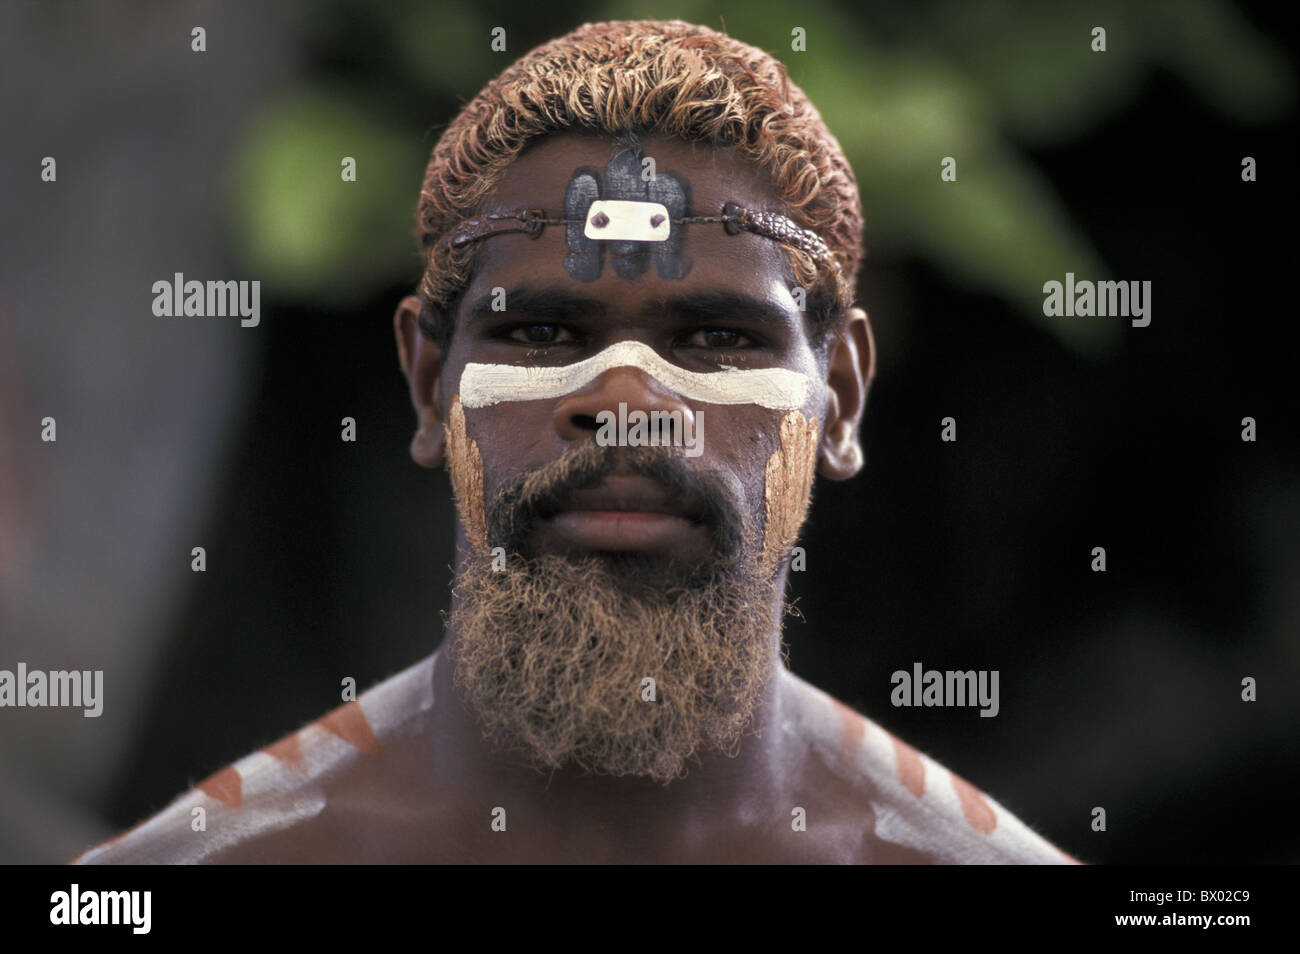 Australien Cairns Queensland Tjapuki Aboriginal Cultural Park Aborigine-Mann gemalt Kultur kein Model-release Stockfoto